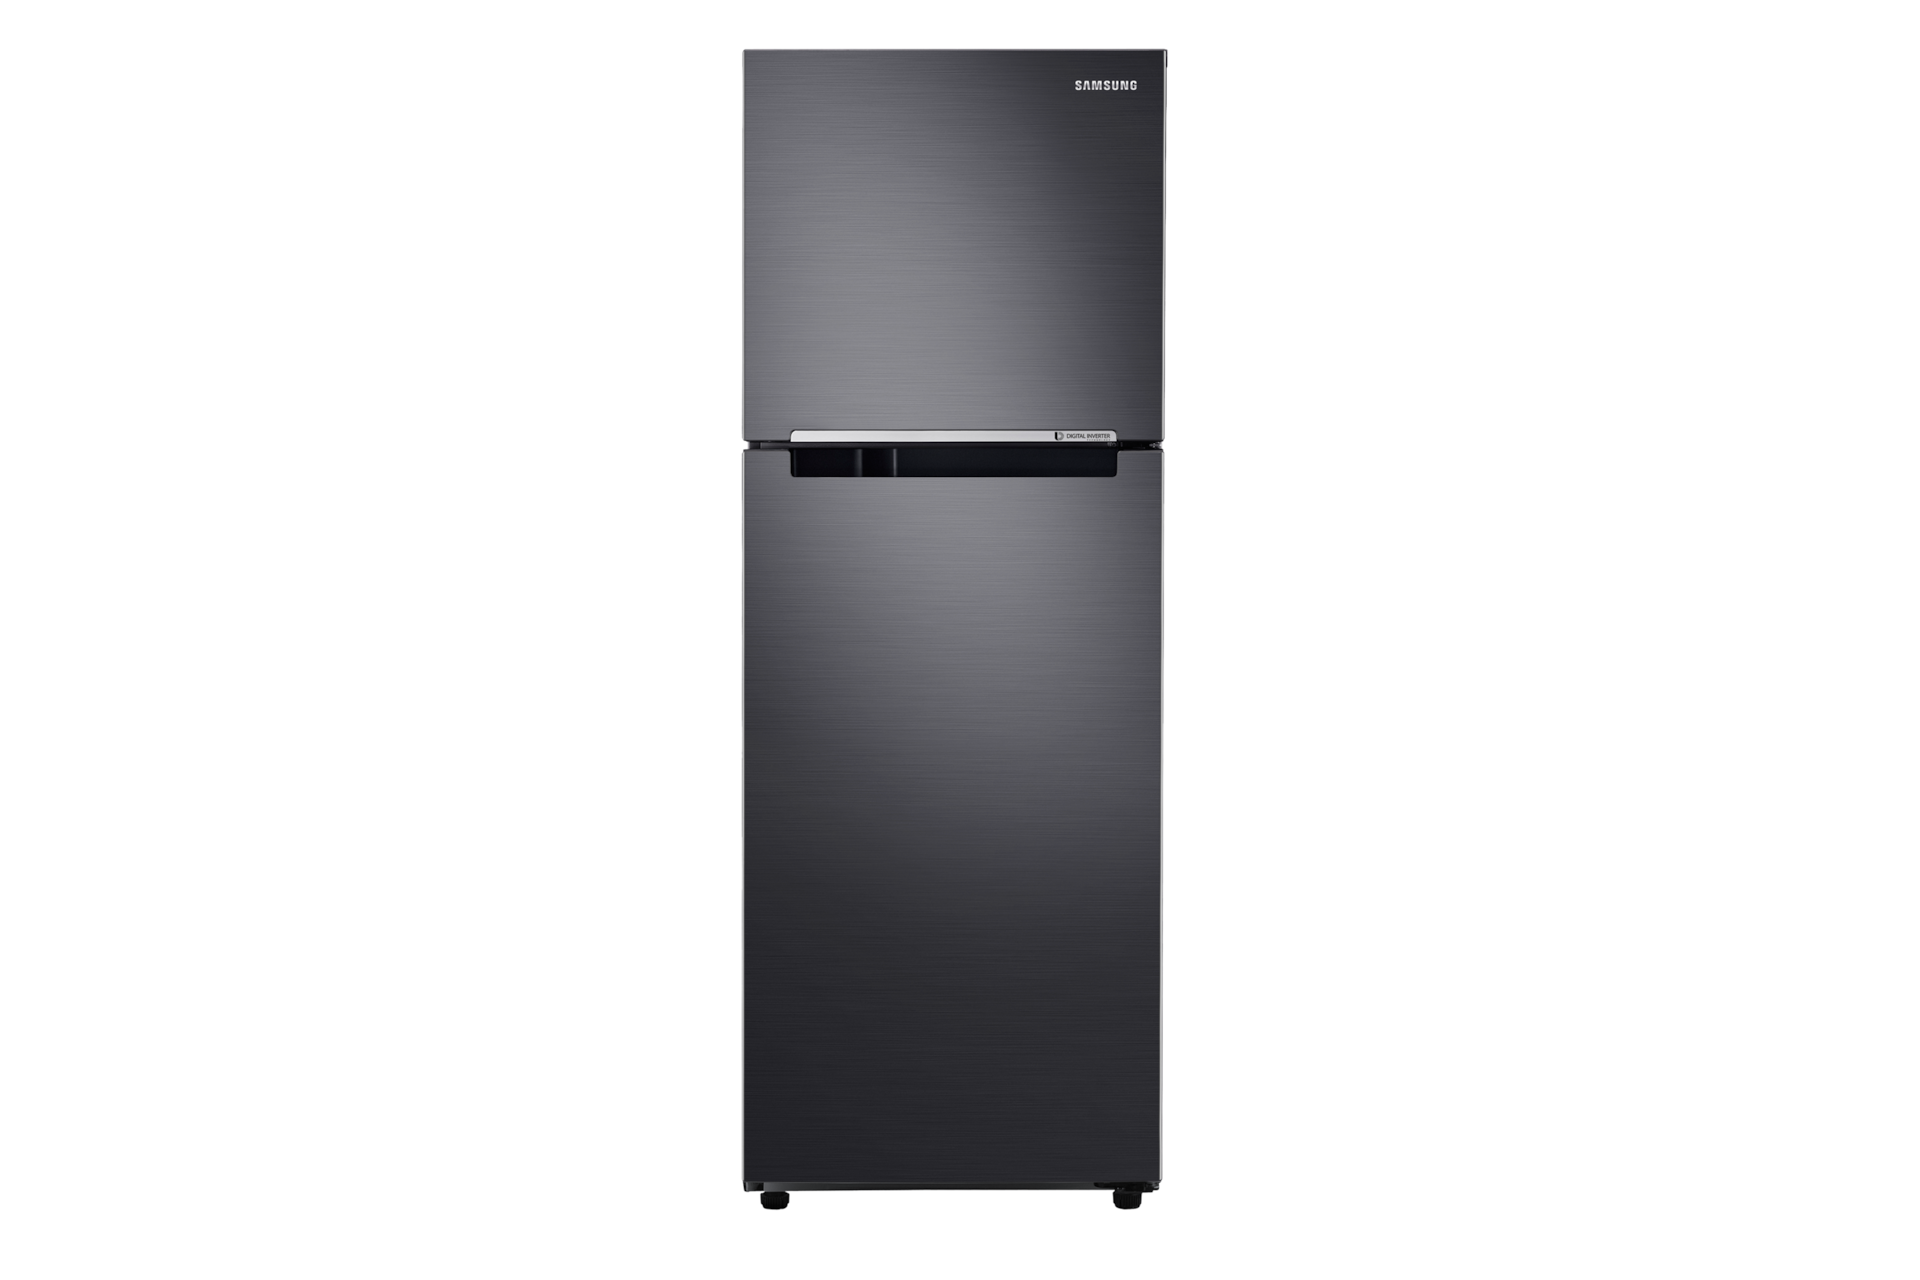 ตู้เย็น 2 ประตู RT22FGRADB1 พร้อมด้วย Digital Inverter Technology, 238.8 L ที่มาพร้อมลิ้นชัก MoistFresh Zone ของ Samsung รองรับการจัดเก็บผักผลไม้อื่นๆ ได้อย่างเหมาะสม